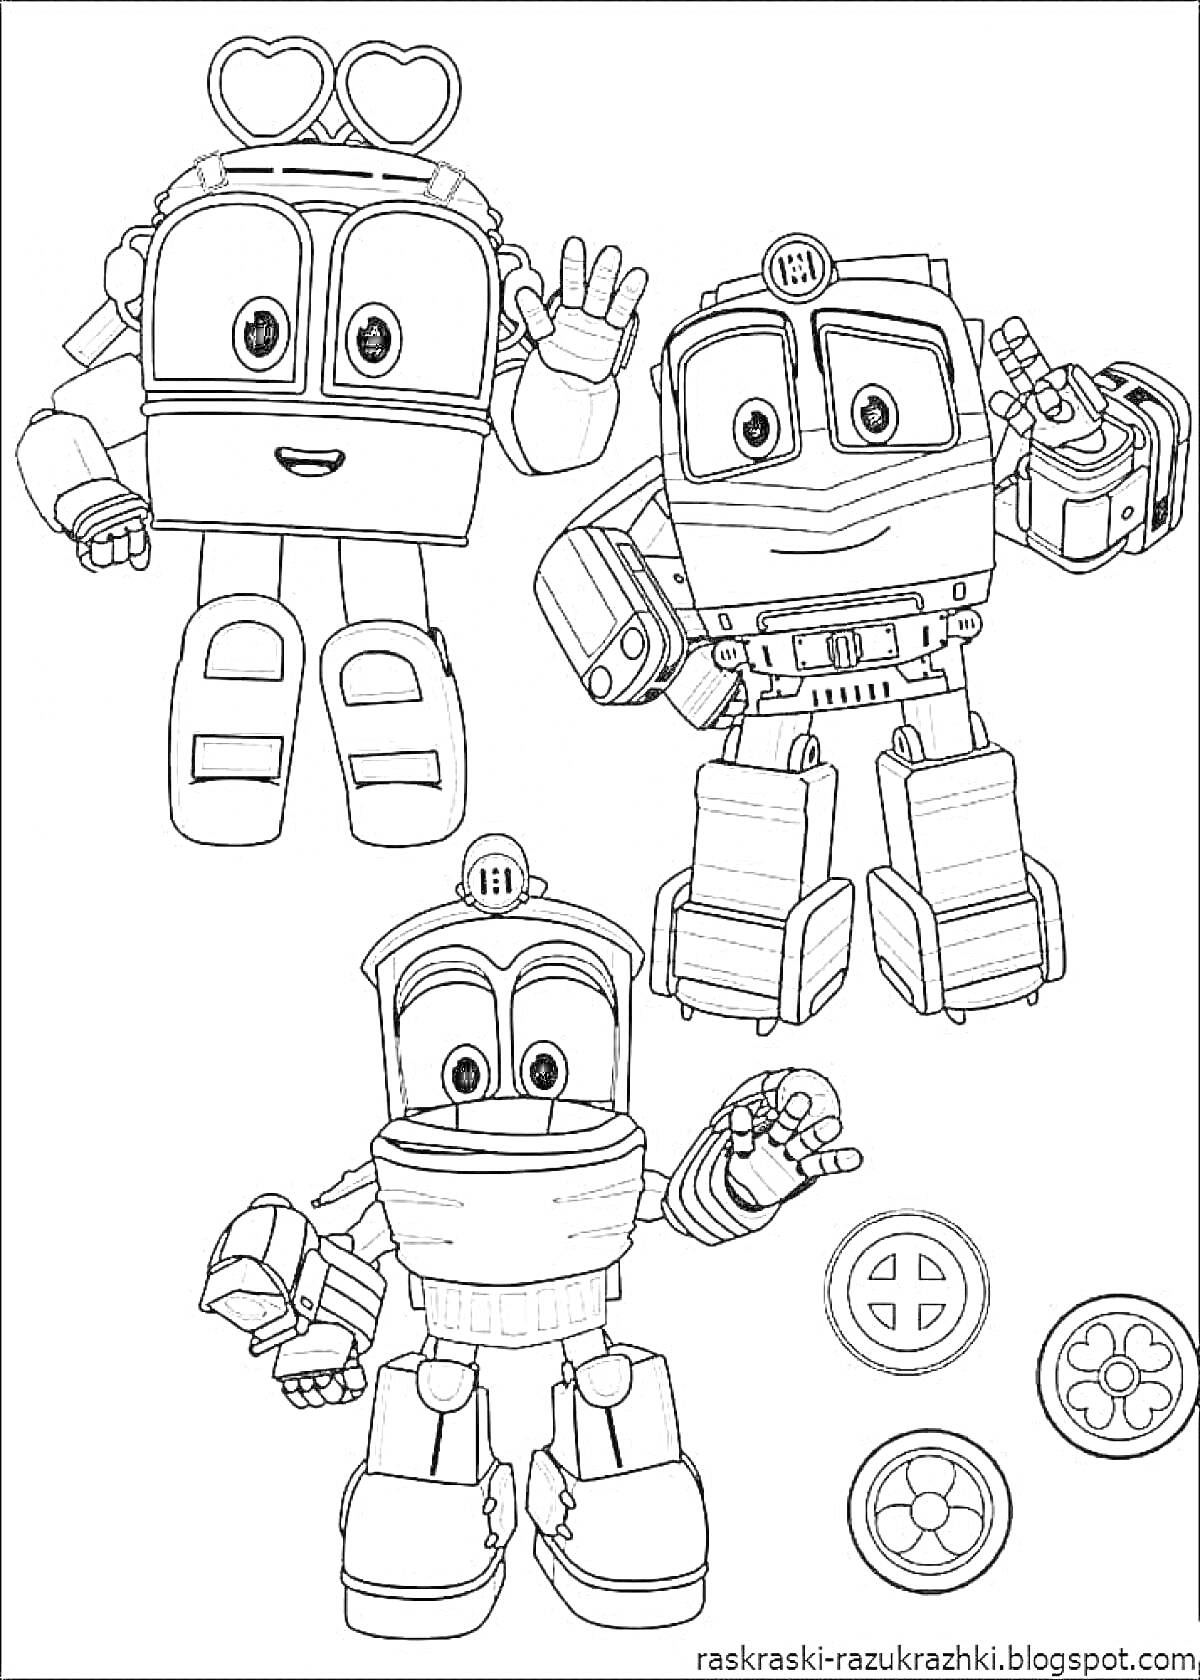 Раскраска Три робота с круглыми глазами и разными аксессуарами (сердечки на голове, очки, фонарик), дополнены рисунками колес